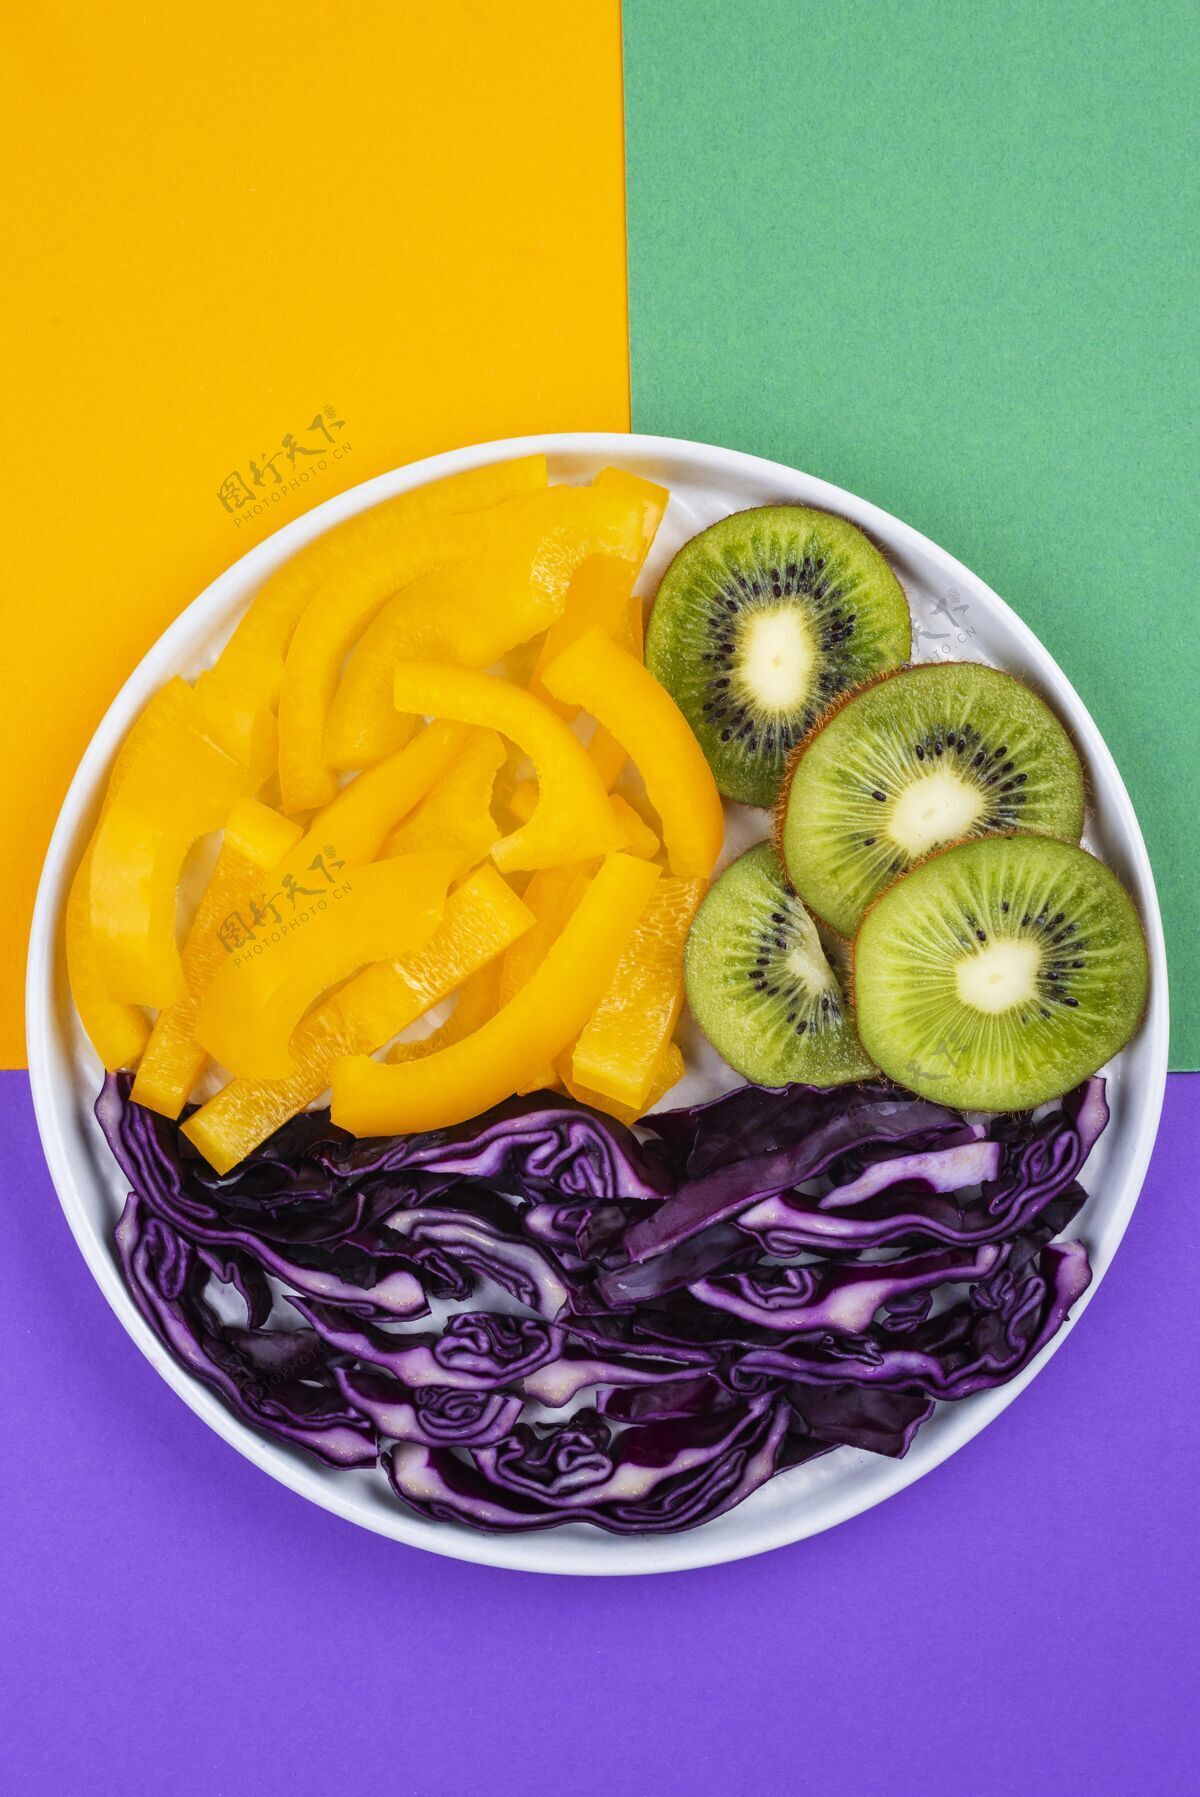 营养布置美味的新鲜水果和蔬菜水果有机成分